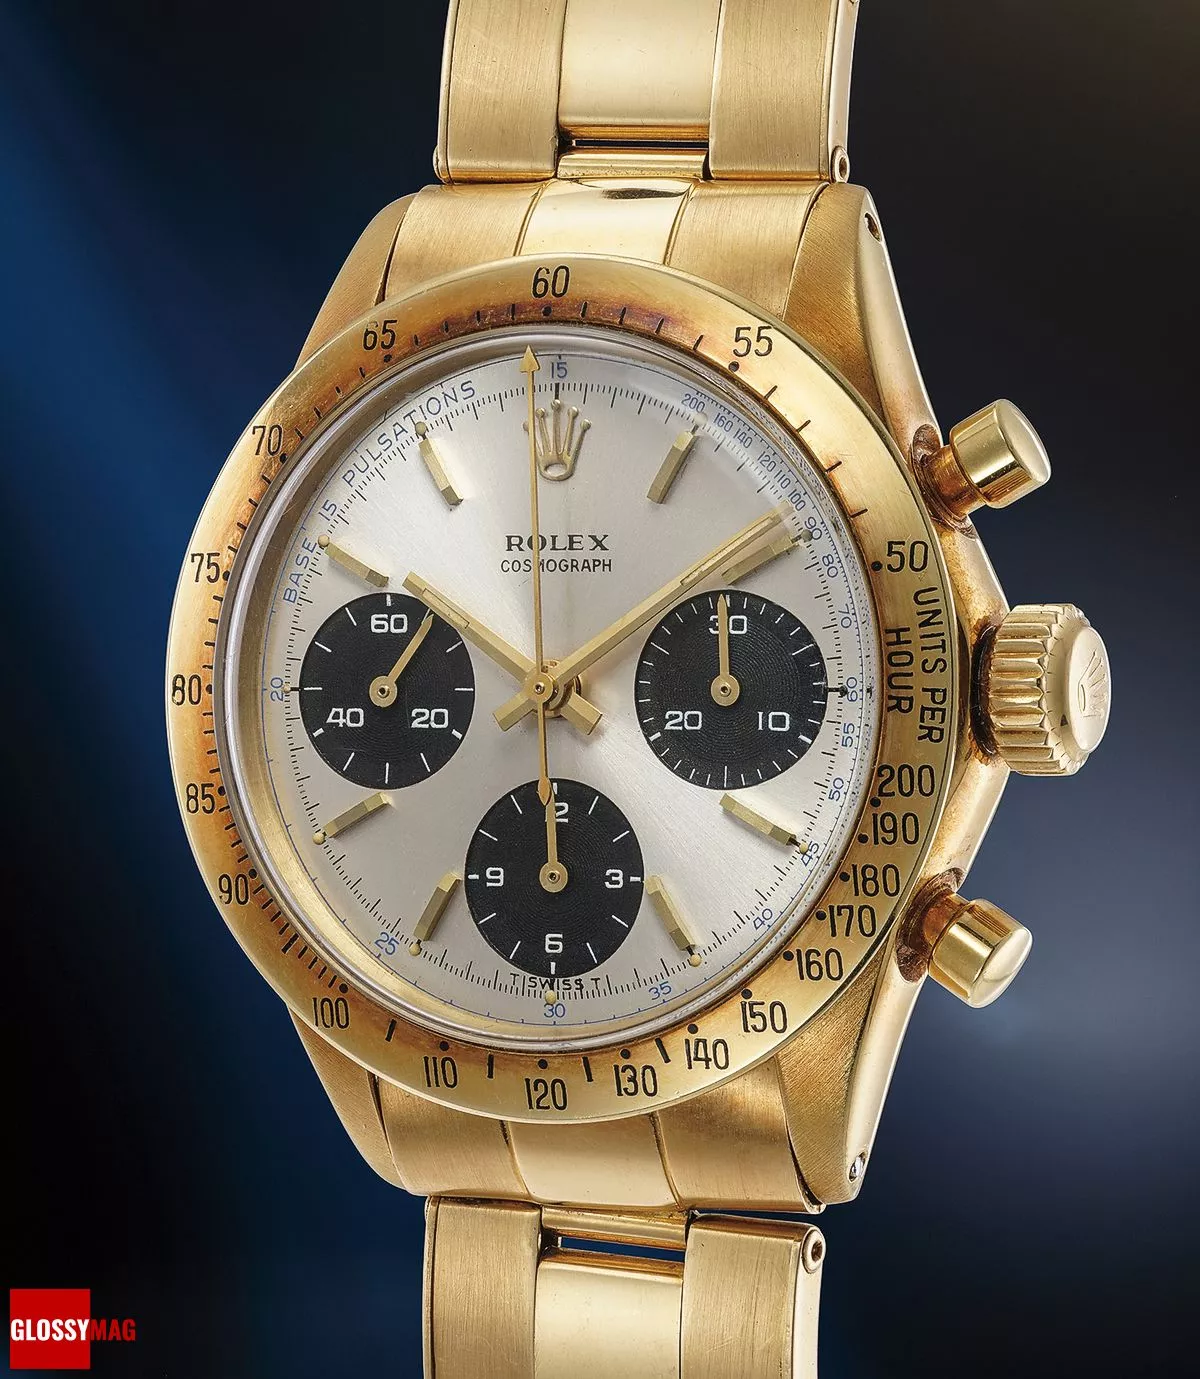 Часы Rolex Ref. 6239 «Crazy Doc» в корпусе из желтого золота (ок. 1968 г.), ранее принадлежавшие Эрику Клэптону